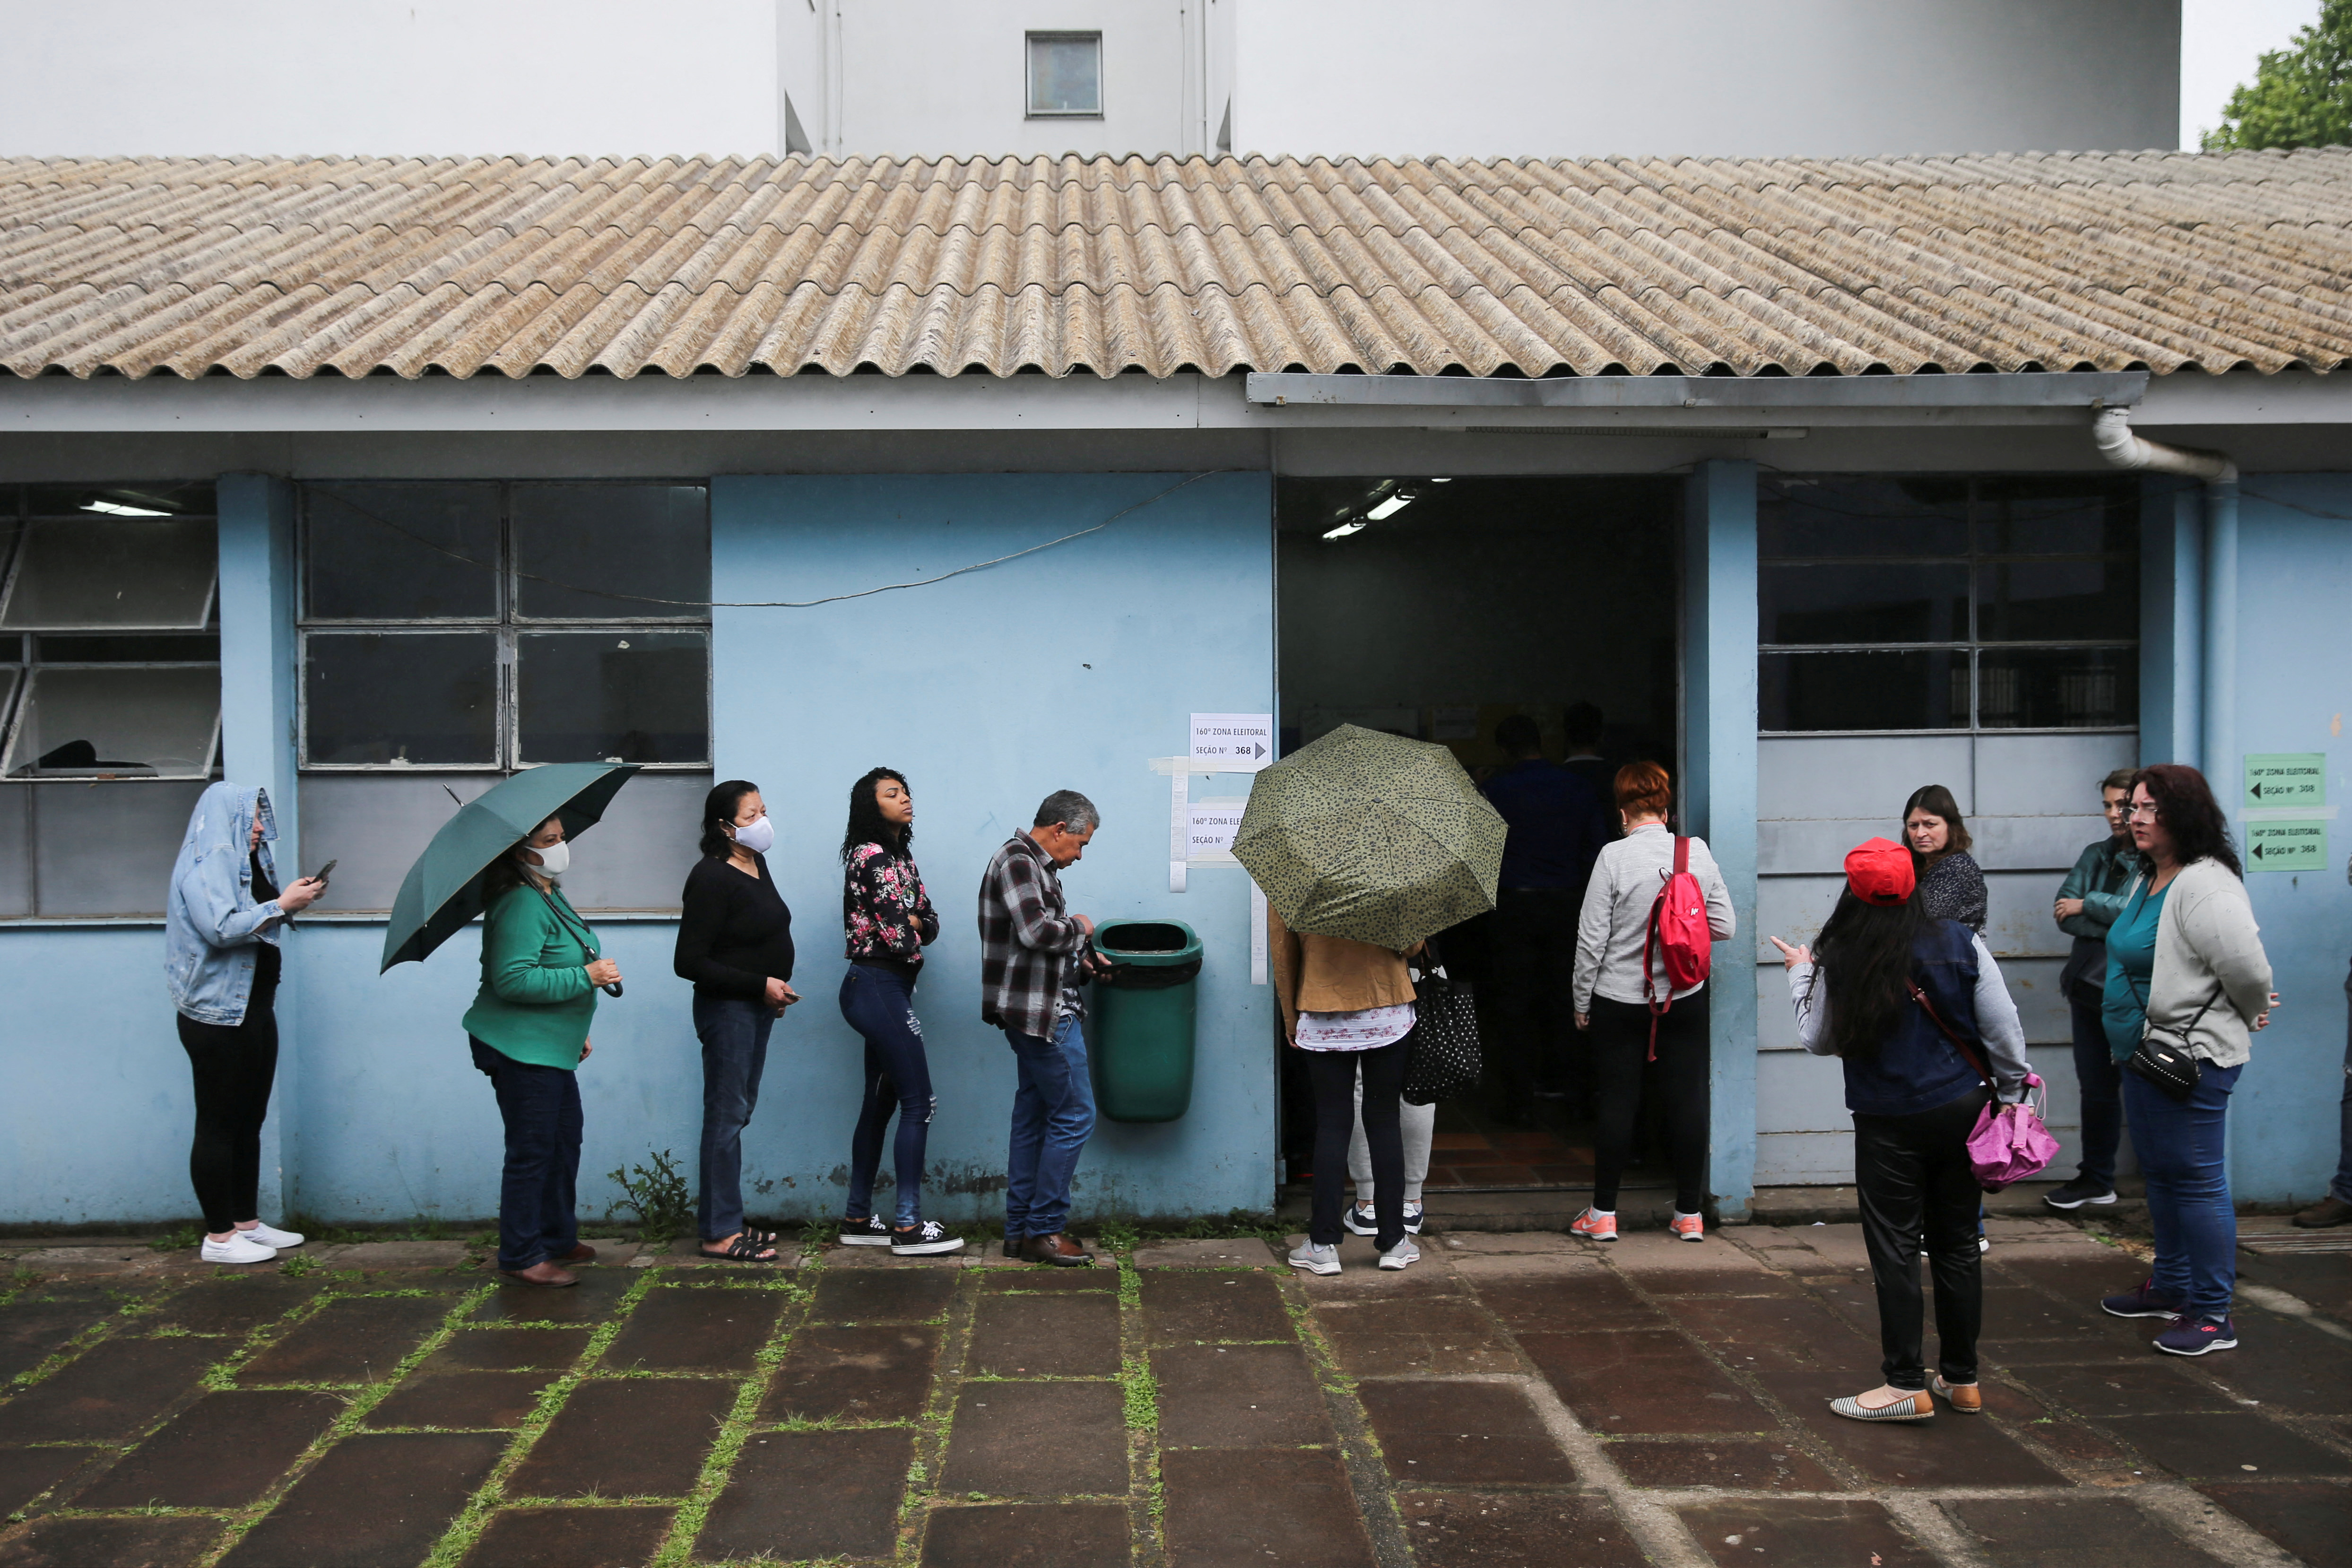 People on the street waiting to vote (REUTERS / Diego Vara)